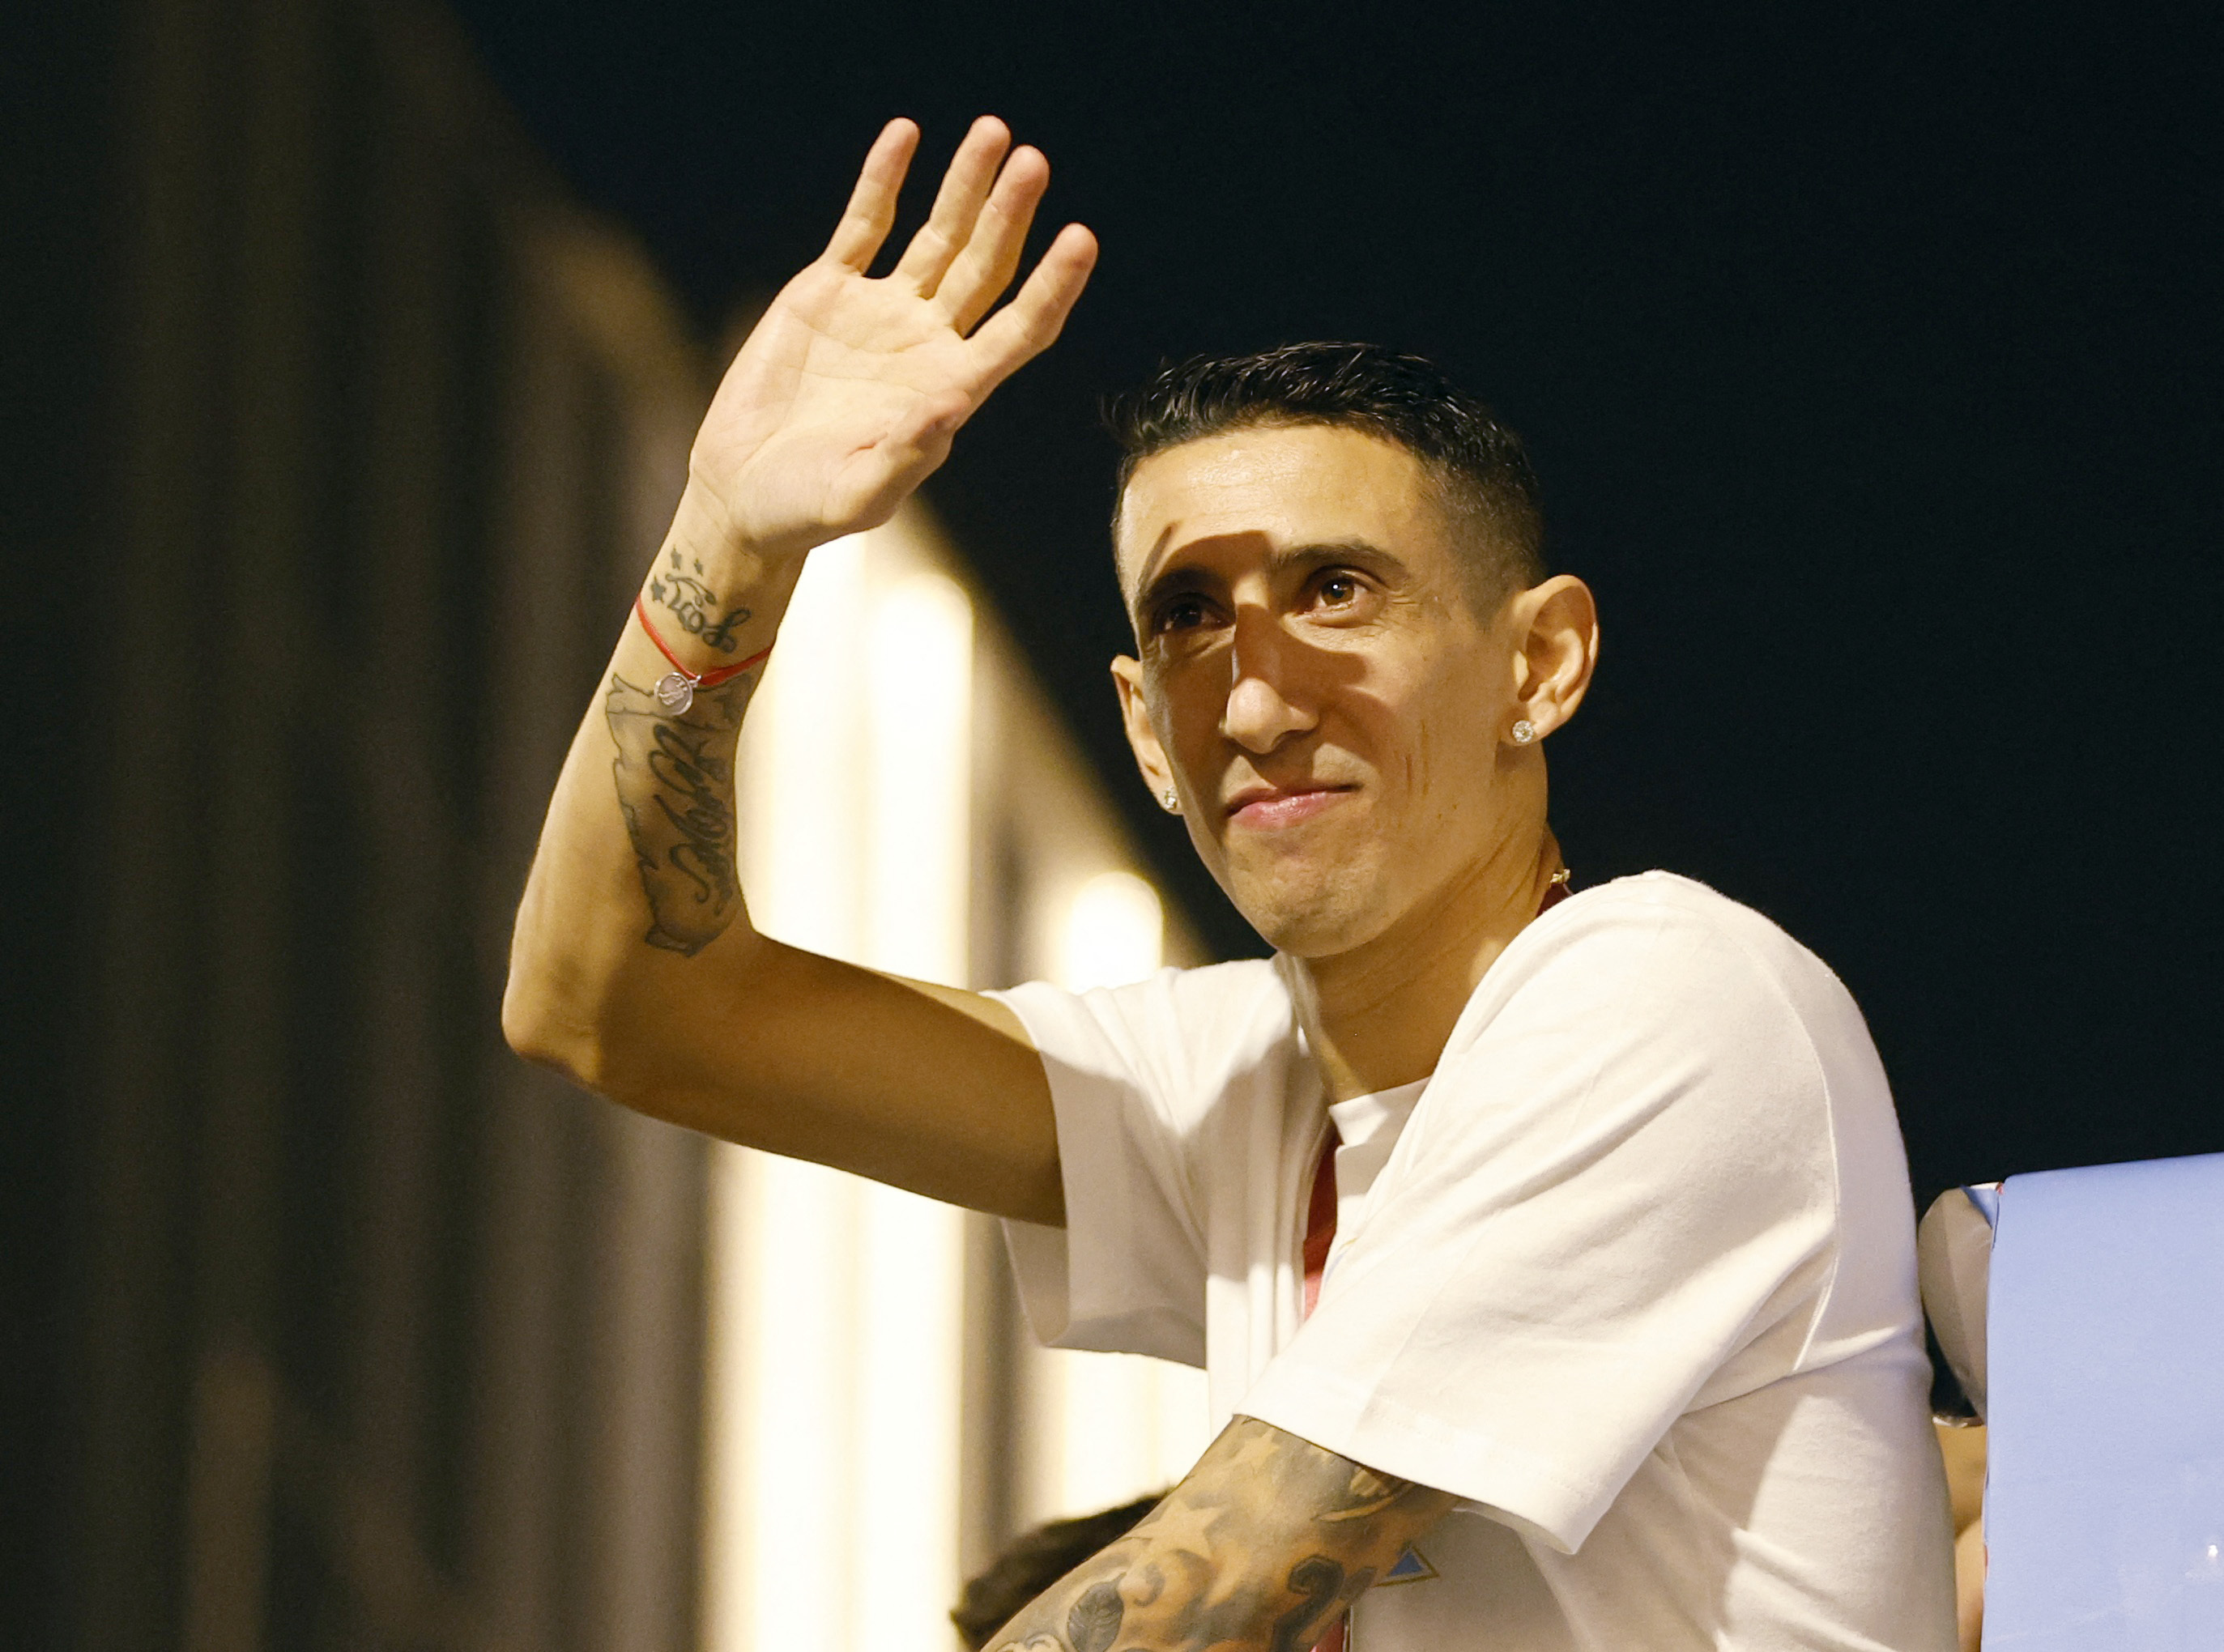 Figura destacada en el partido de la final frente a Francia, Di María saluda al público local que también festejaba el día de Qatar. Fideo otra vez metió un gol en una final de la selección argentina 